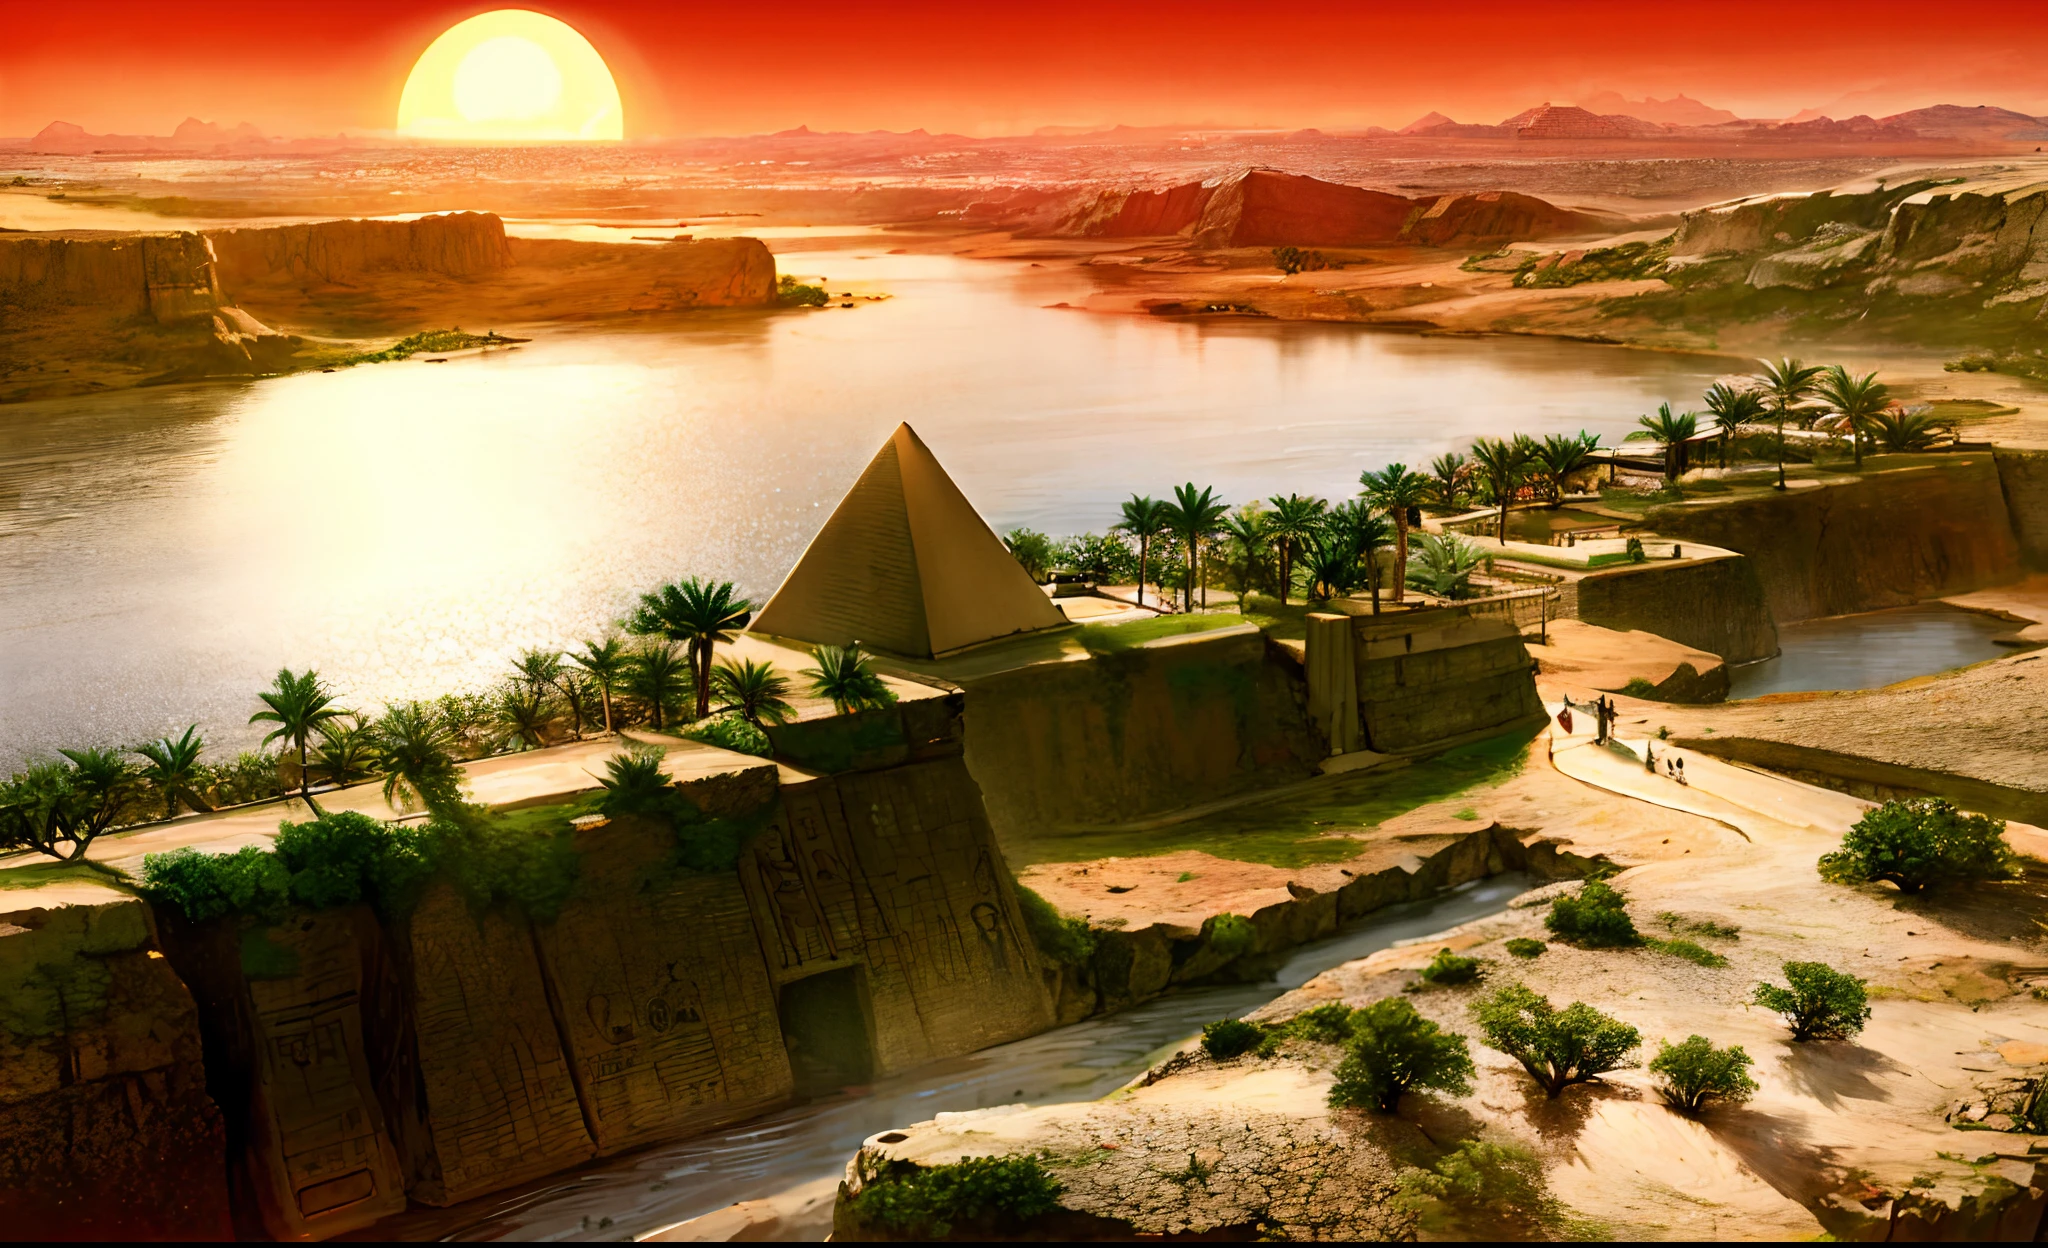 Die altägyptische Zivilisation，Weitwinkelaufnahme，Nil，Pyramide，untergehende Sonne，Der Fluss erstreckt sich bis zum Horizont，epischer Sinn，Sense of grandeur